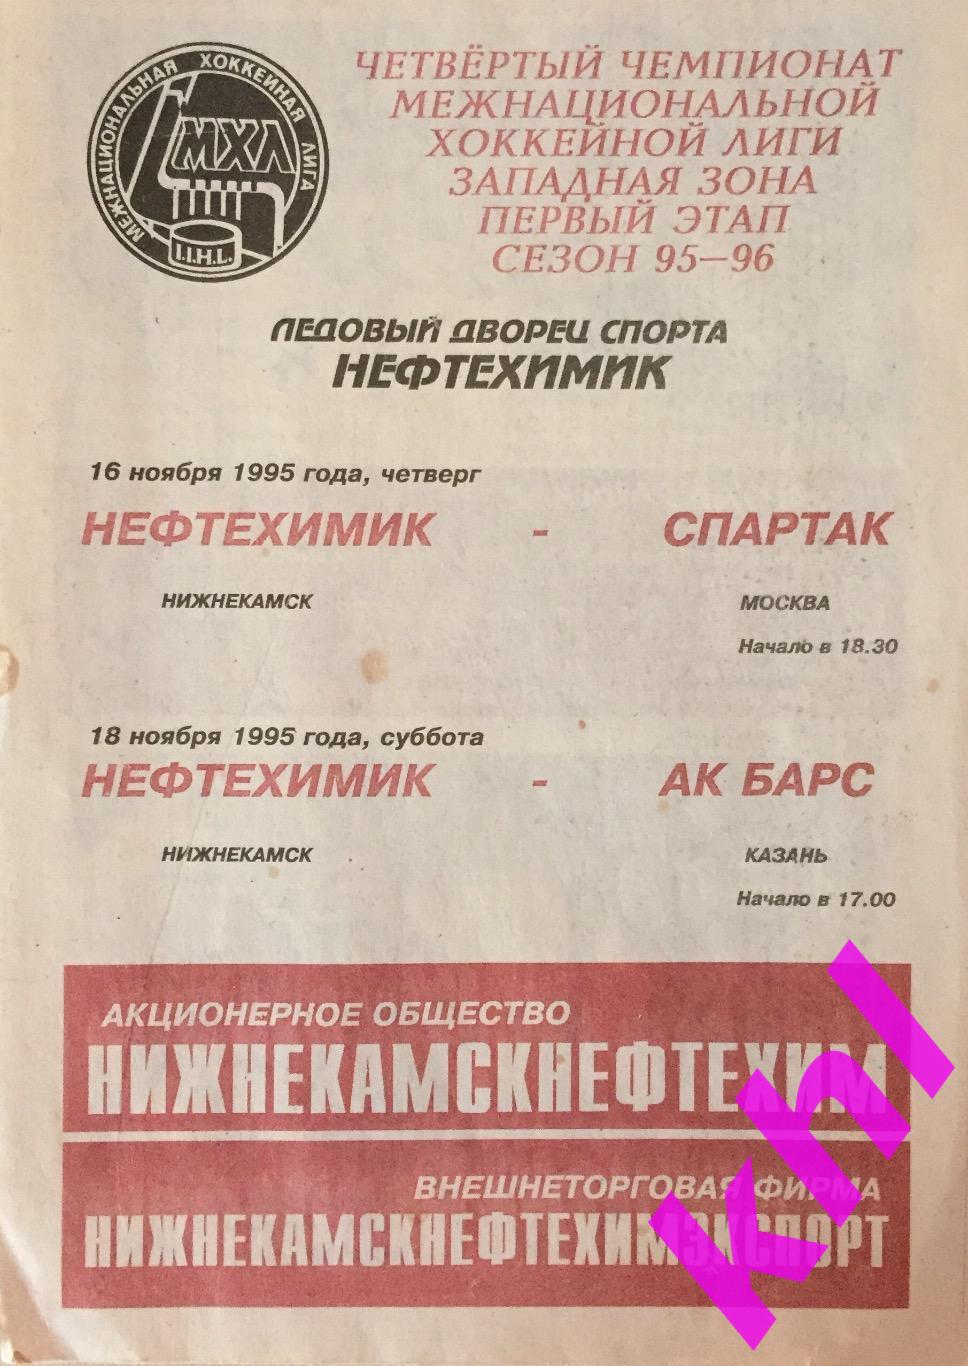 Нефтехимик Нижнекамск - Спартак Москва 16 ноября 1995